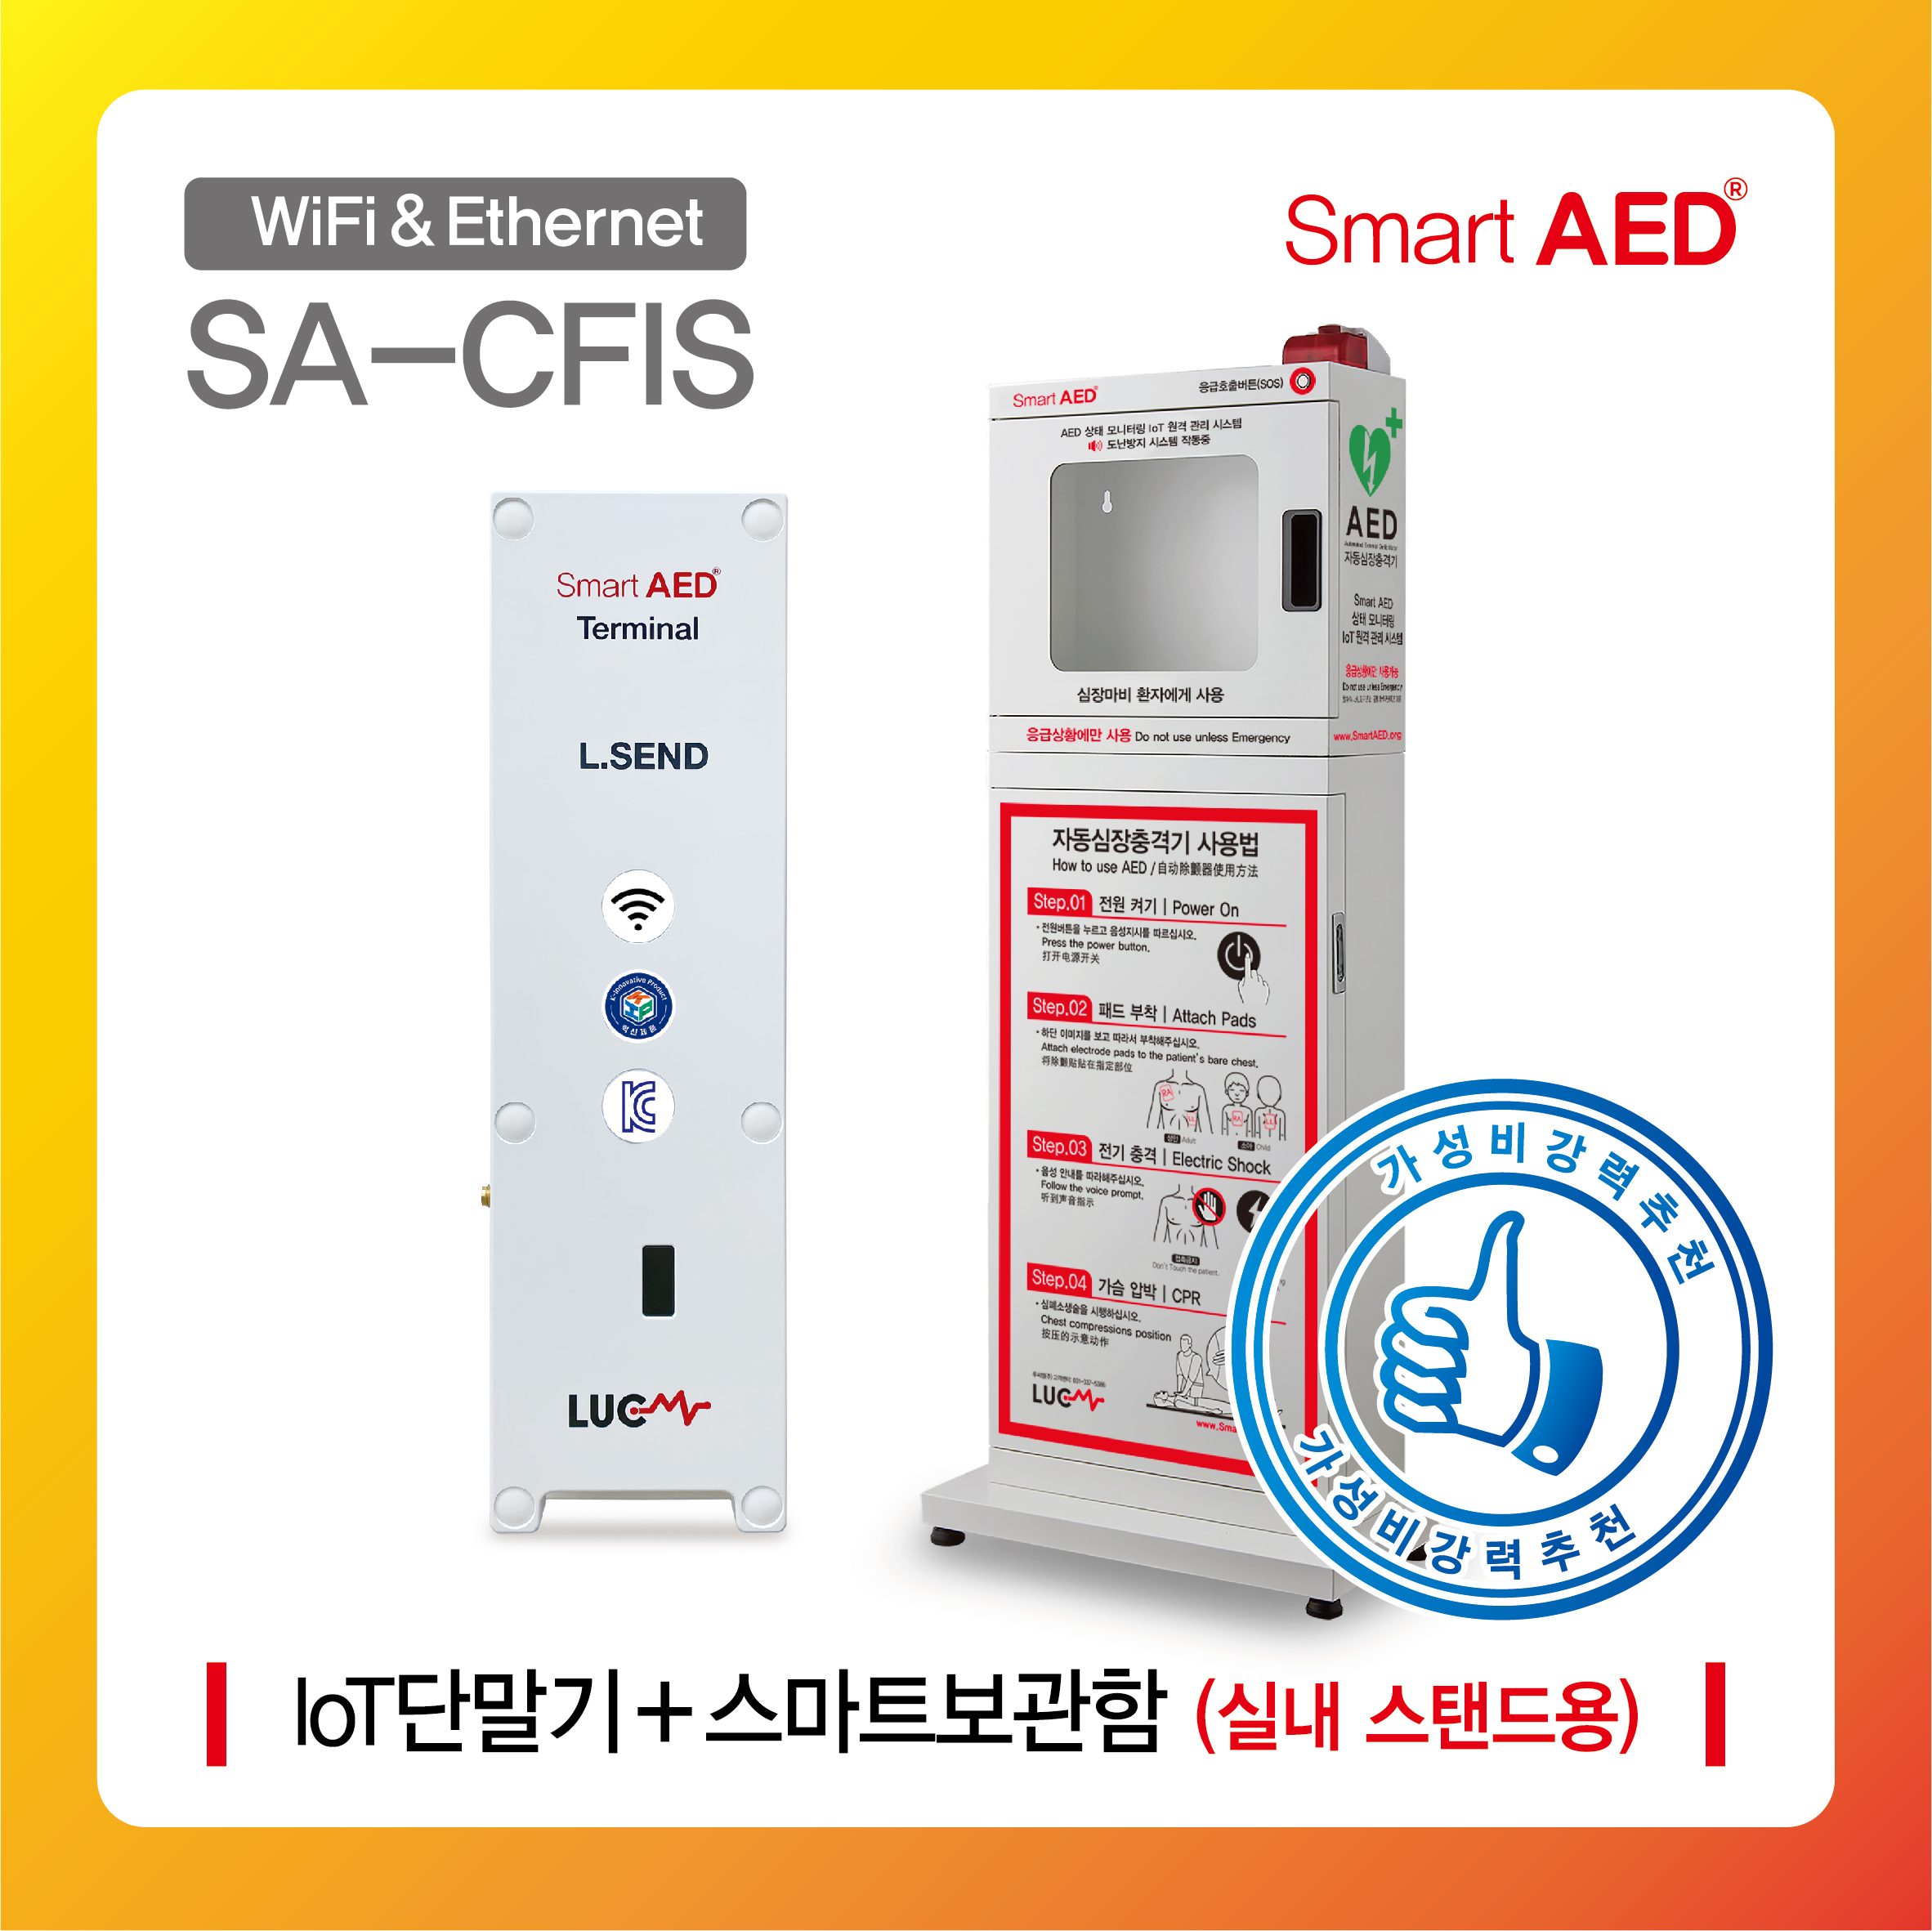 [ SA-CFIS ] 스마트 AED 통합모니터링 장치 및 보관함(실내 스탠드형)